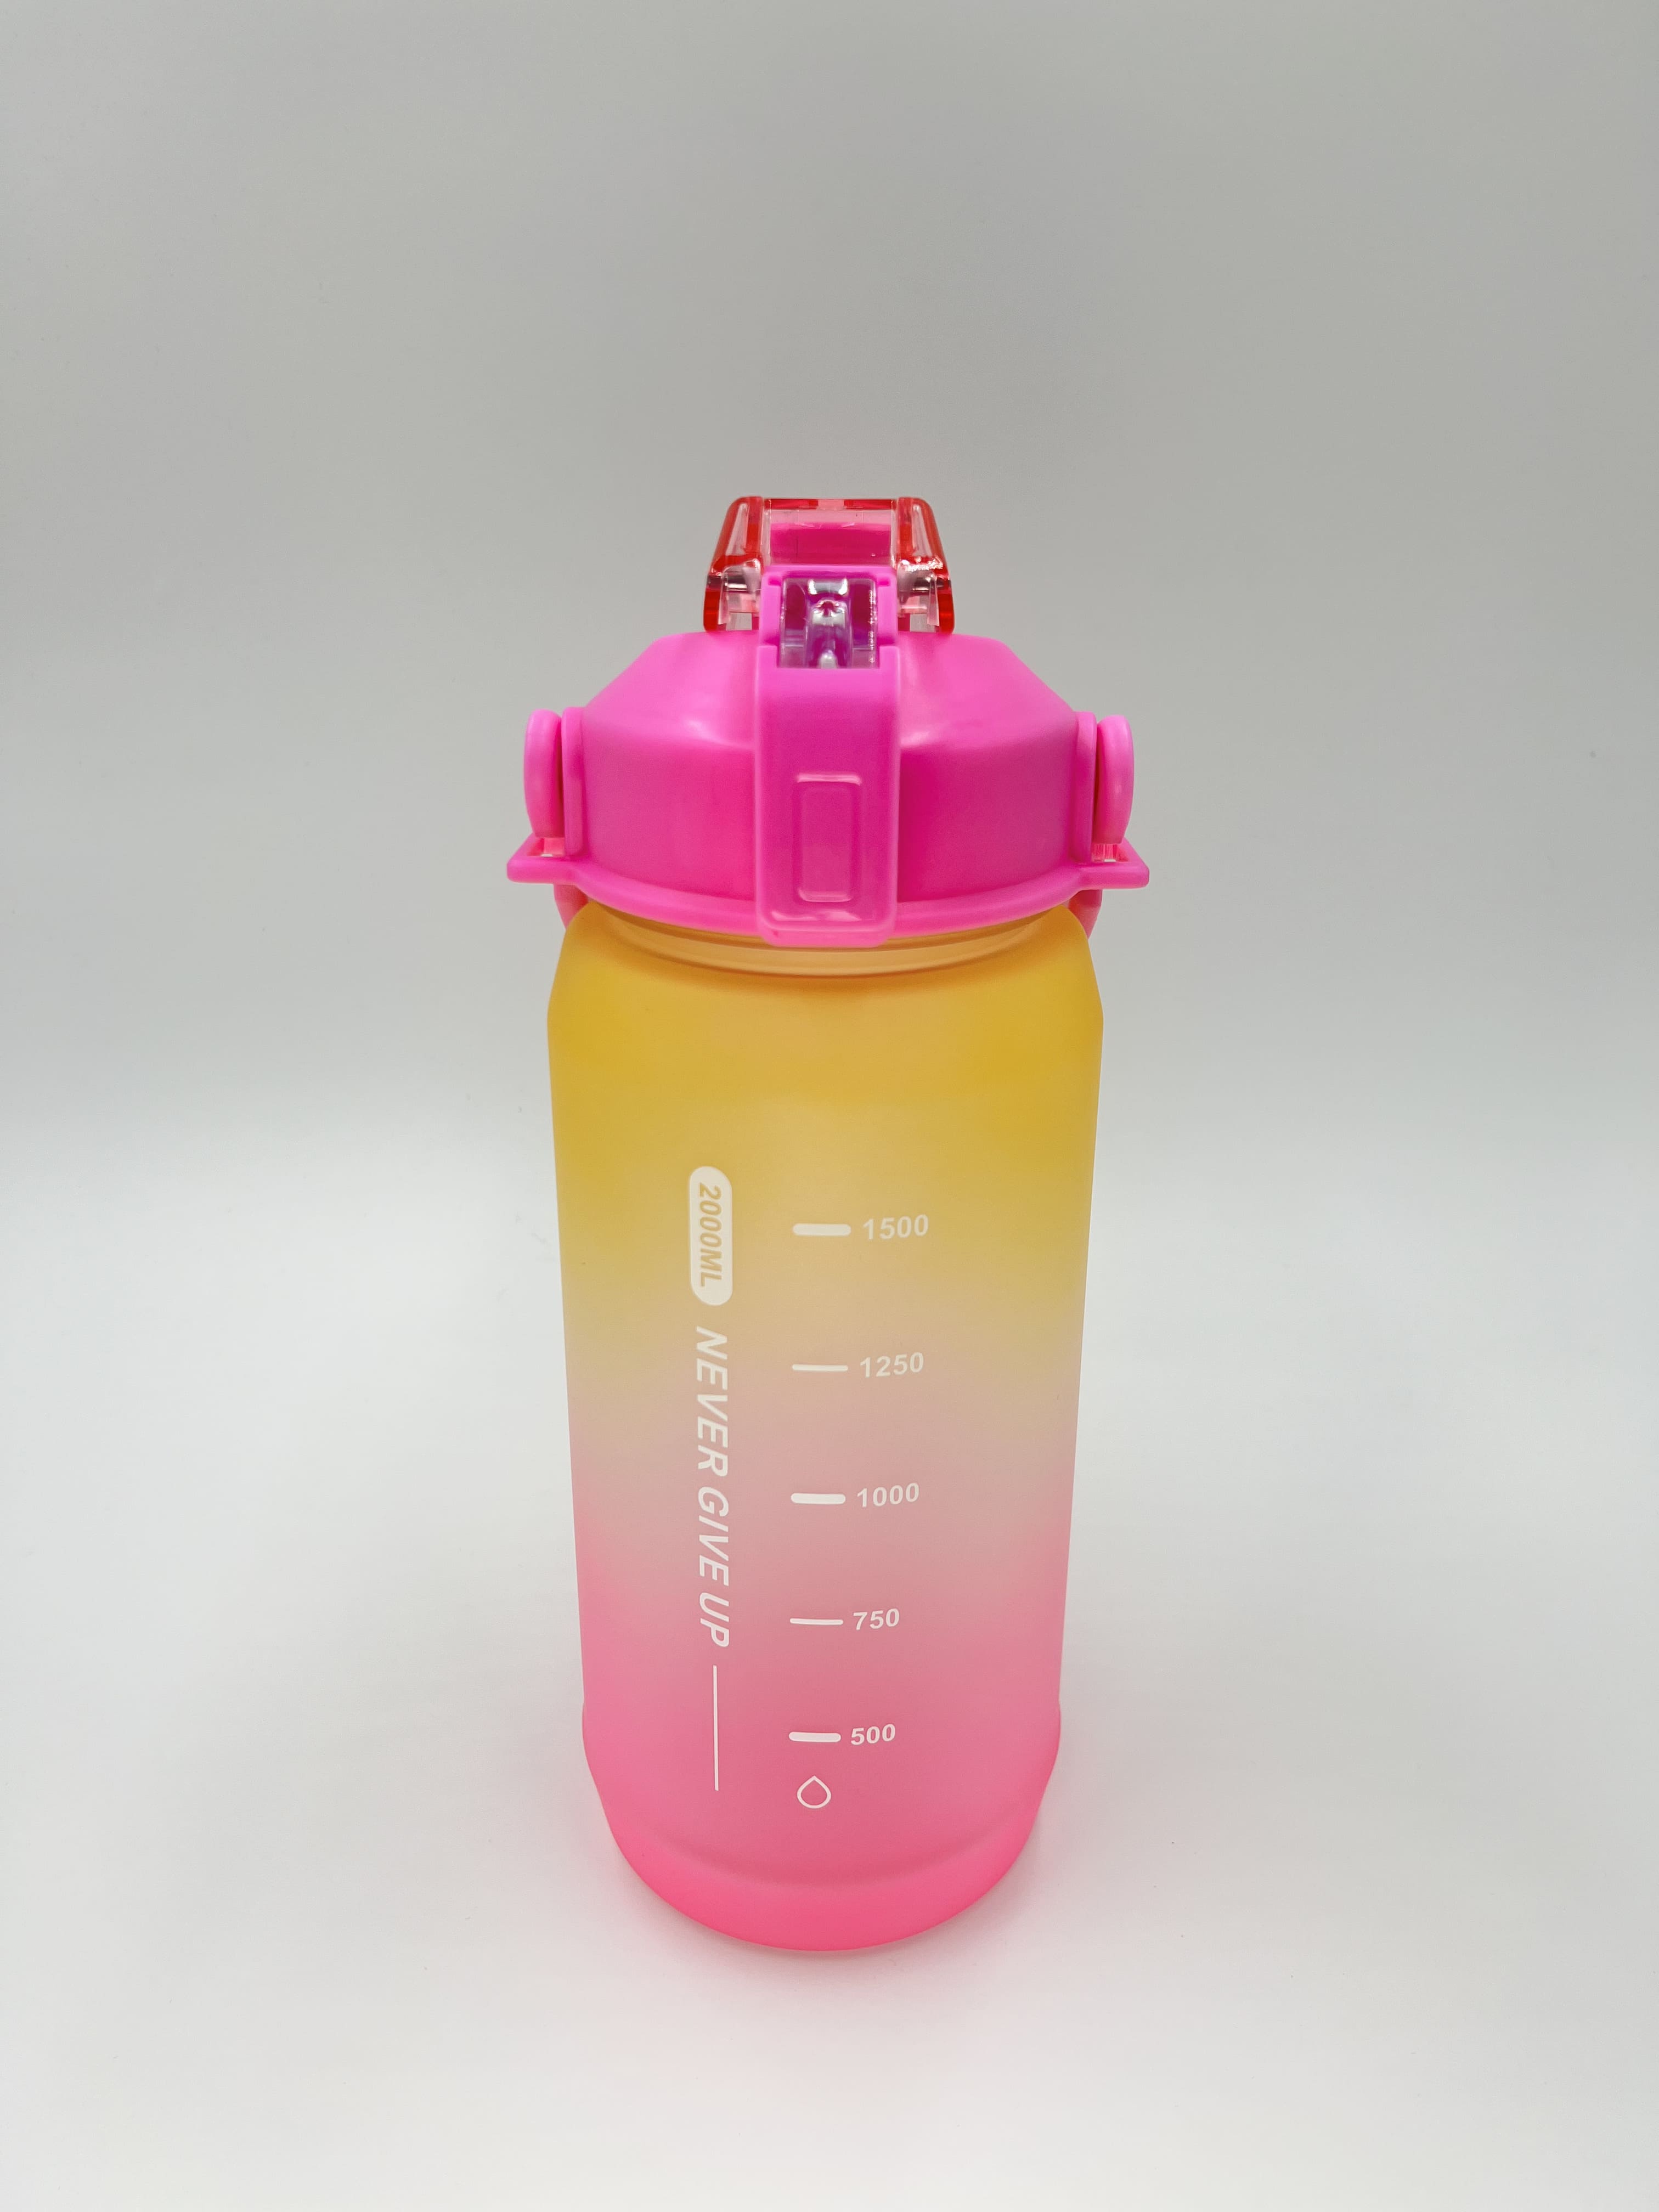 Бутылка для воды PEAK (L1232040, Pink)